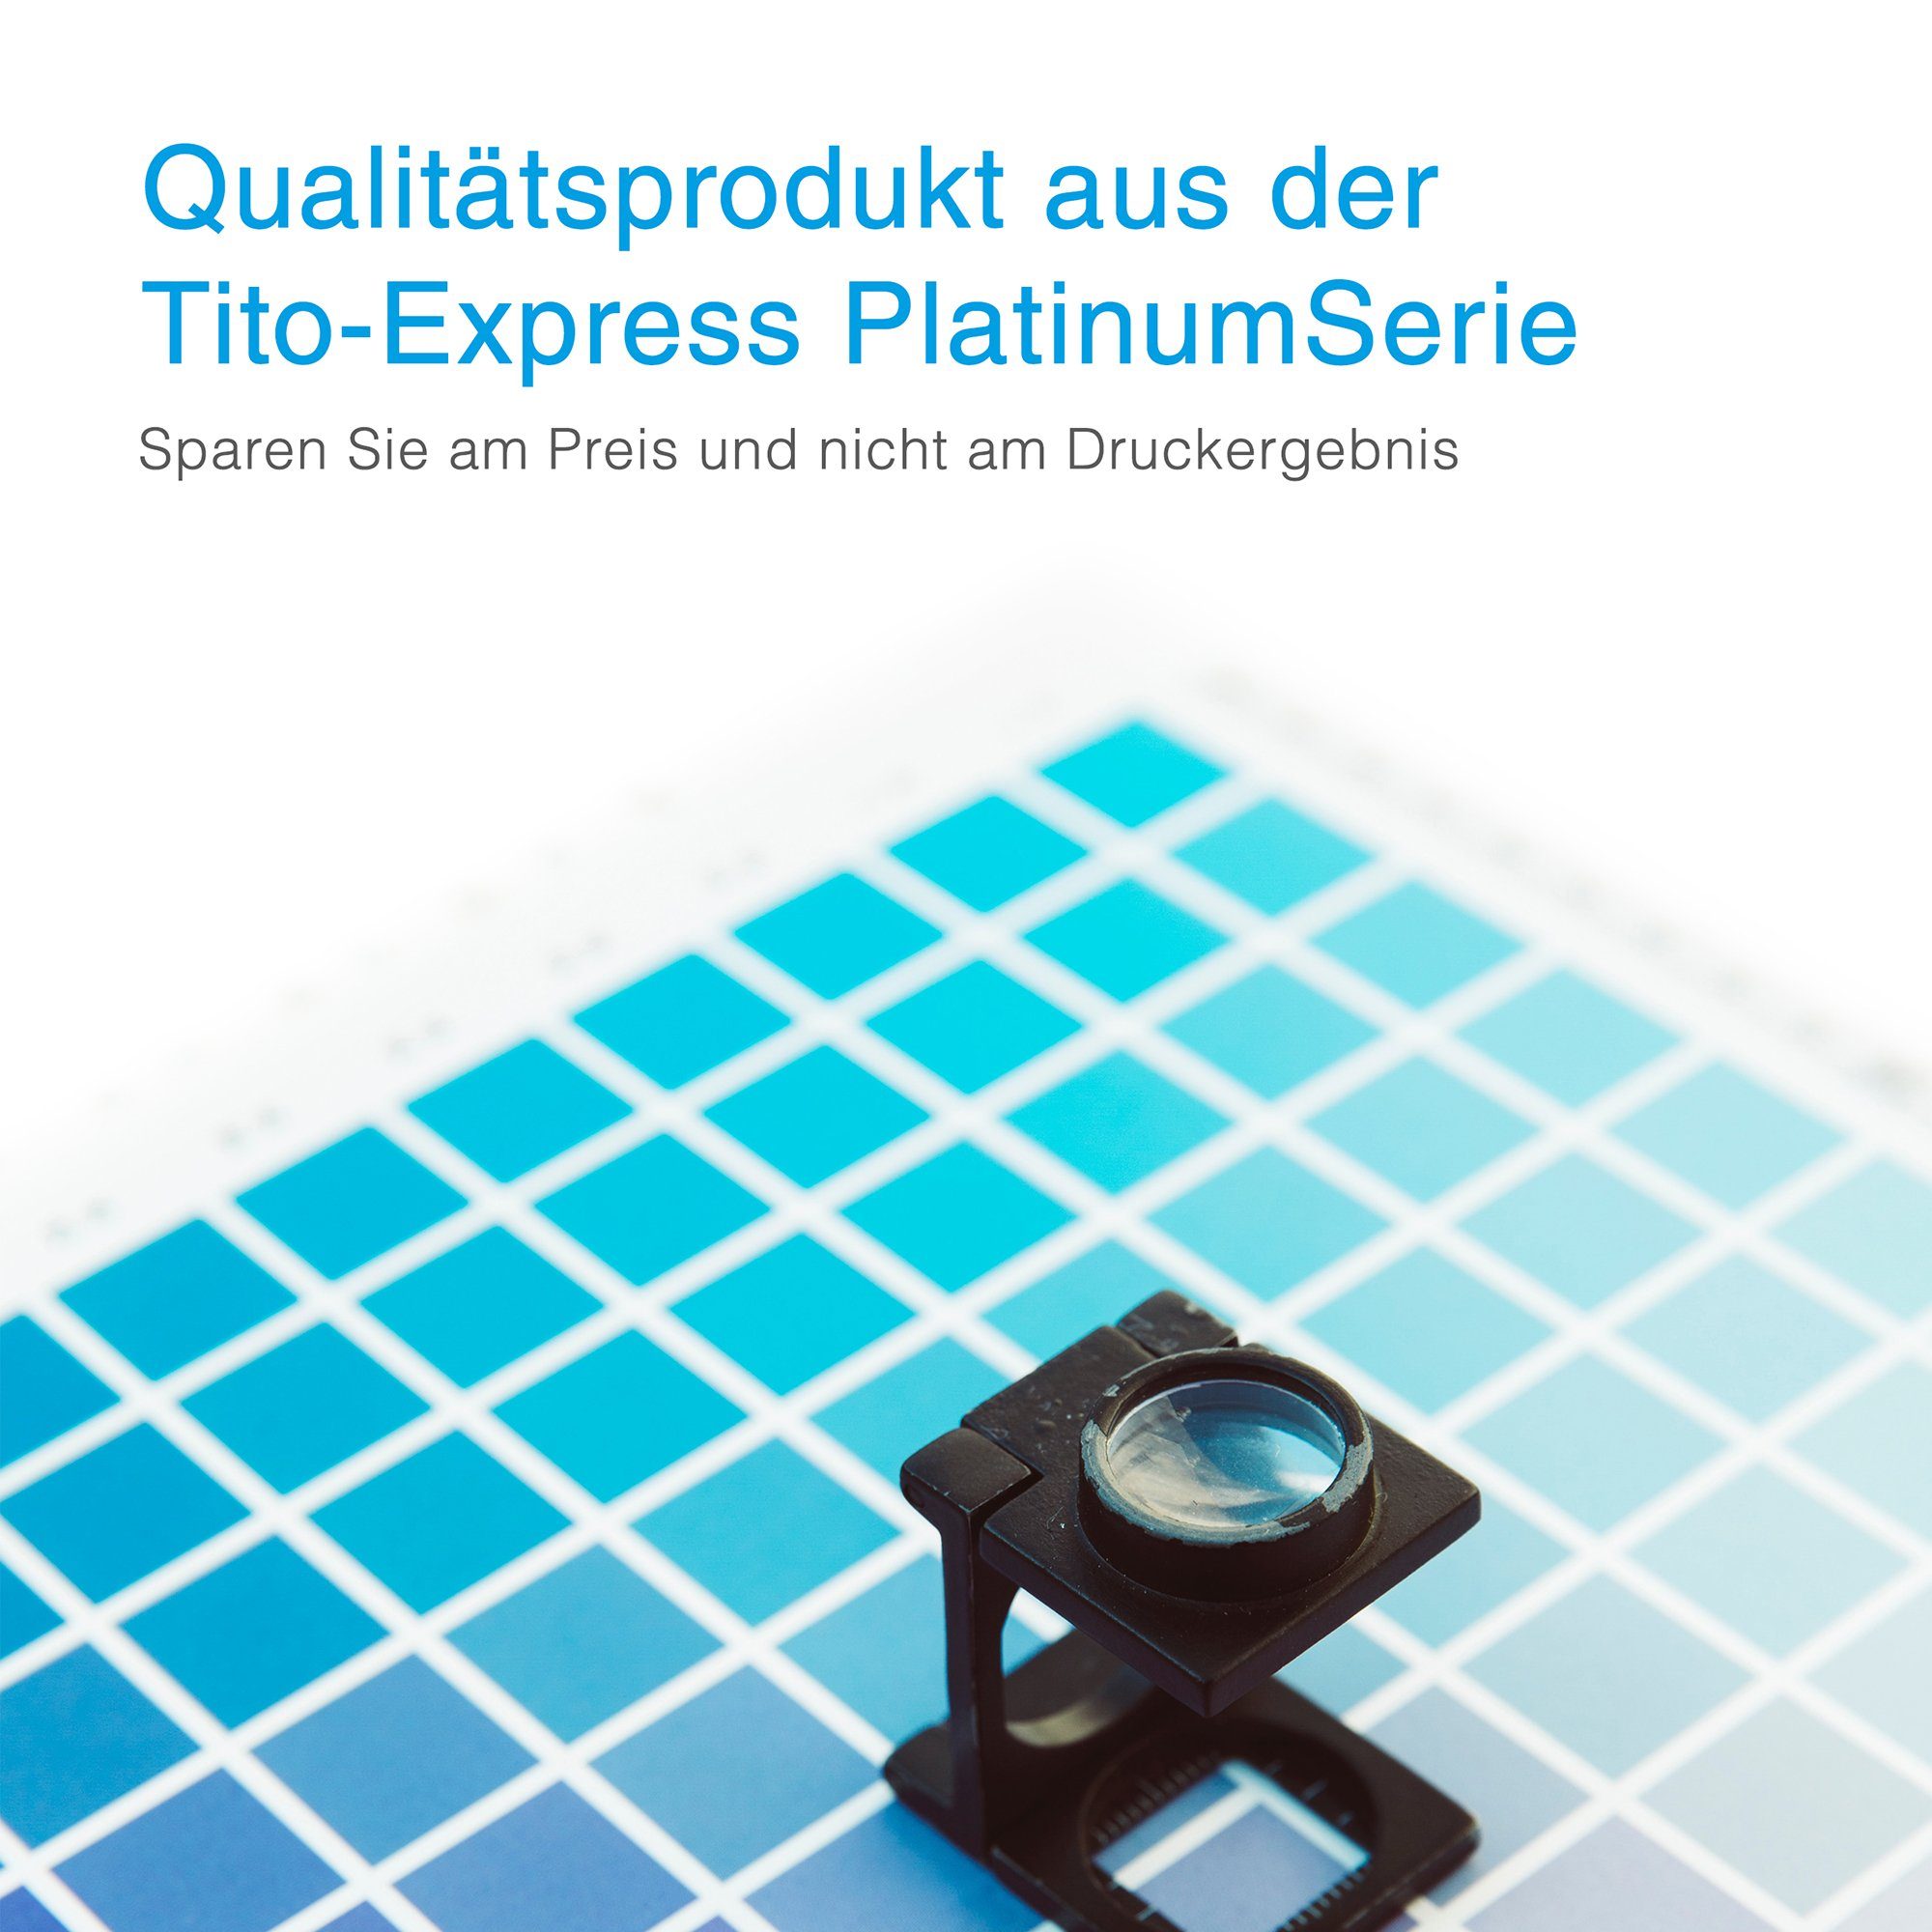 Tito-Express 5er Officejet Set 9015 Pro 963XL 9016 (Multipack, 9025 9010 9022 HP 9014 9018) 9020 für 9012 HP 9019 XL 963 ersetzt Tintenpatrone